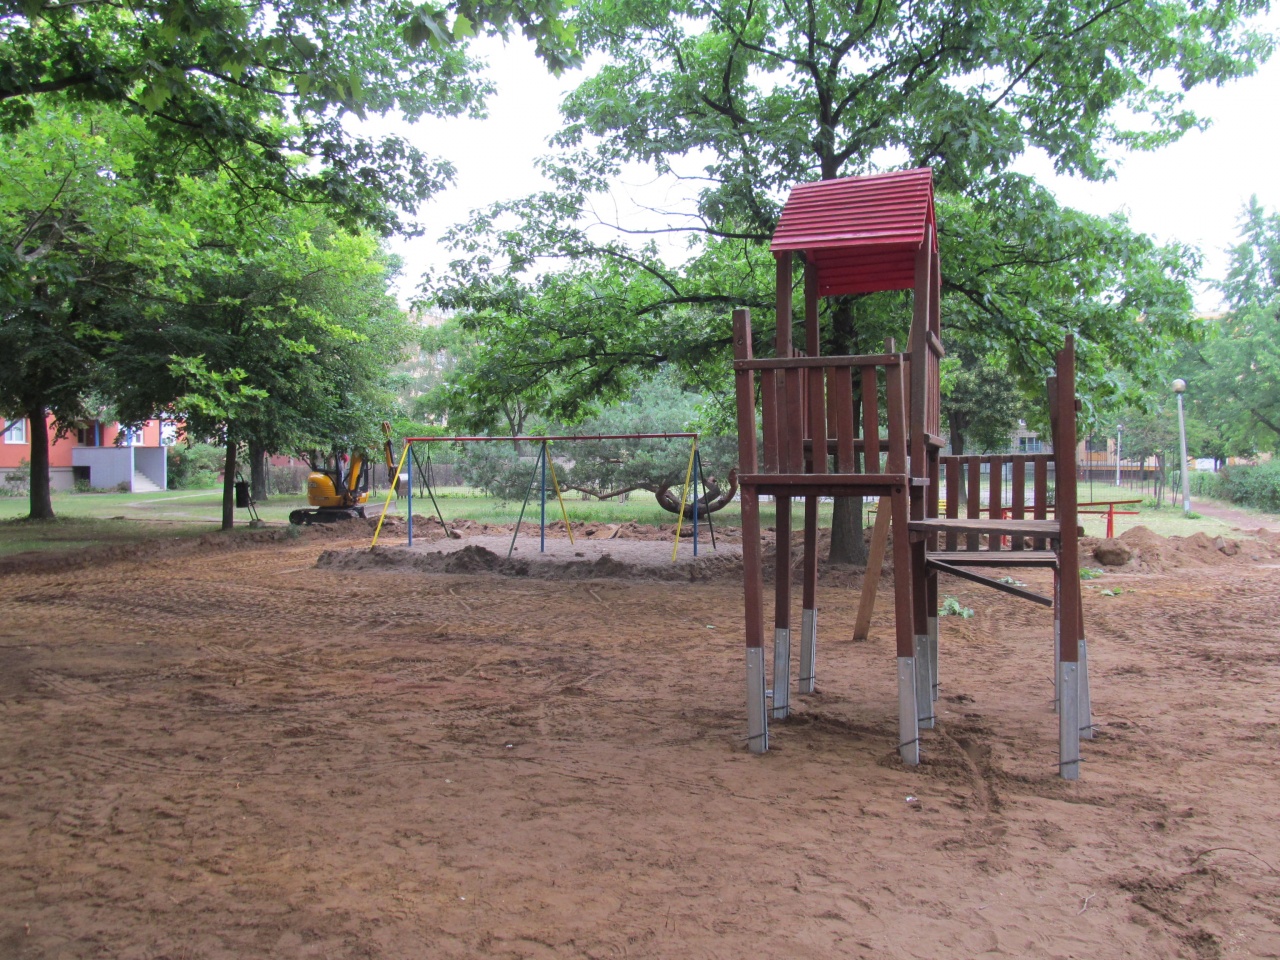 Újabb park és játszótér újul meg Nyíregyházán, ezúttal a Jósavárosban